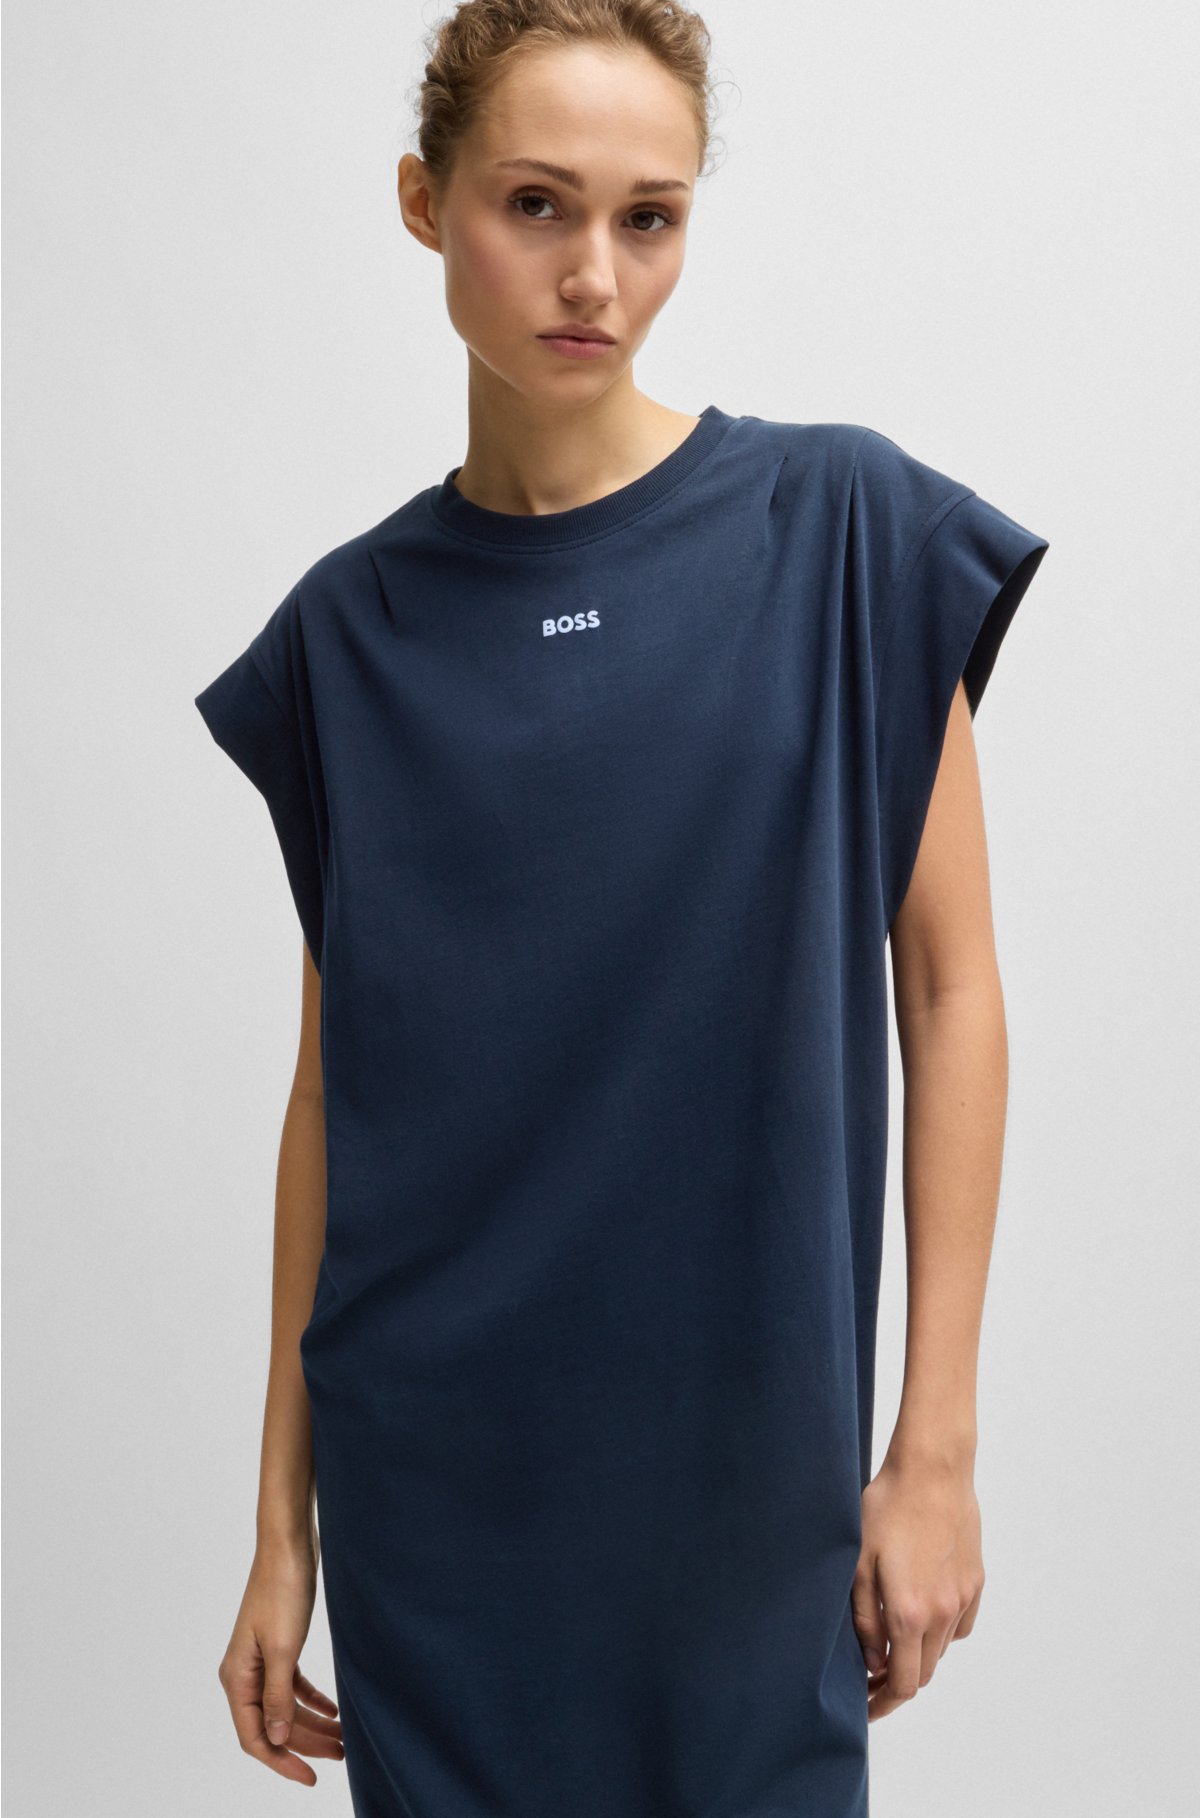 Cotton-jersey T-shirt dress with puff logo, Dark Blue